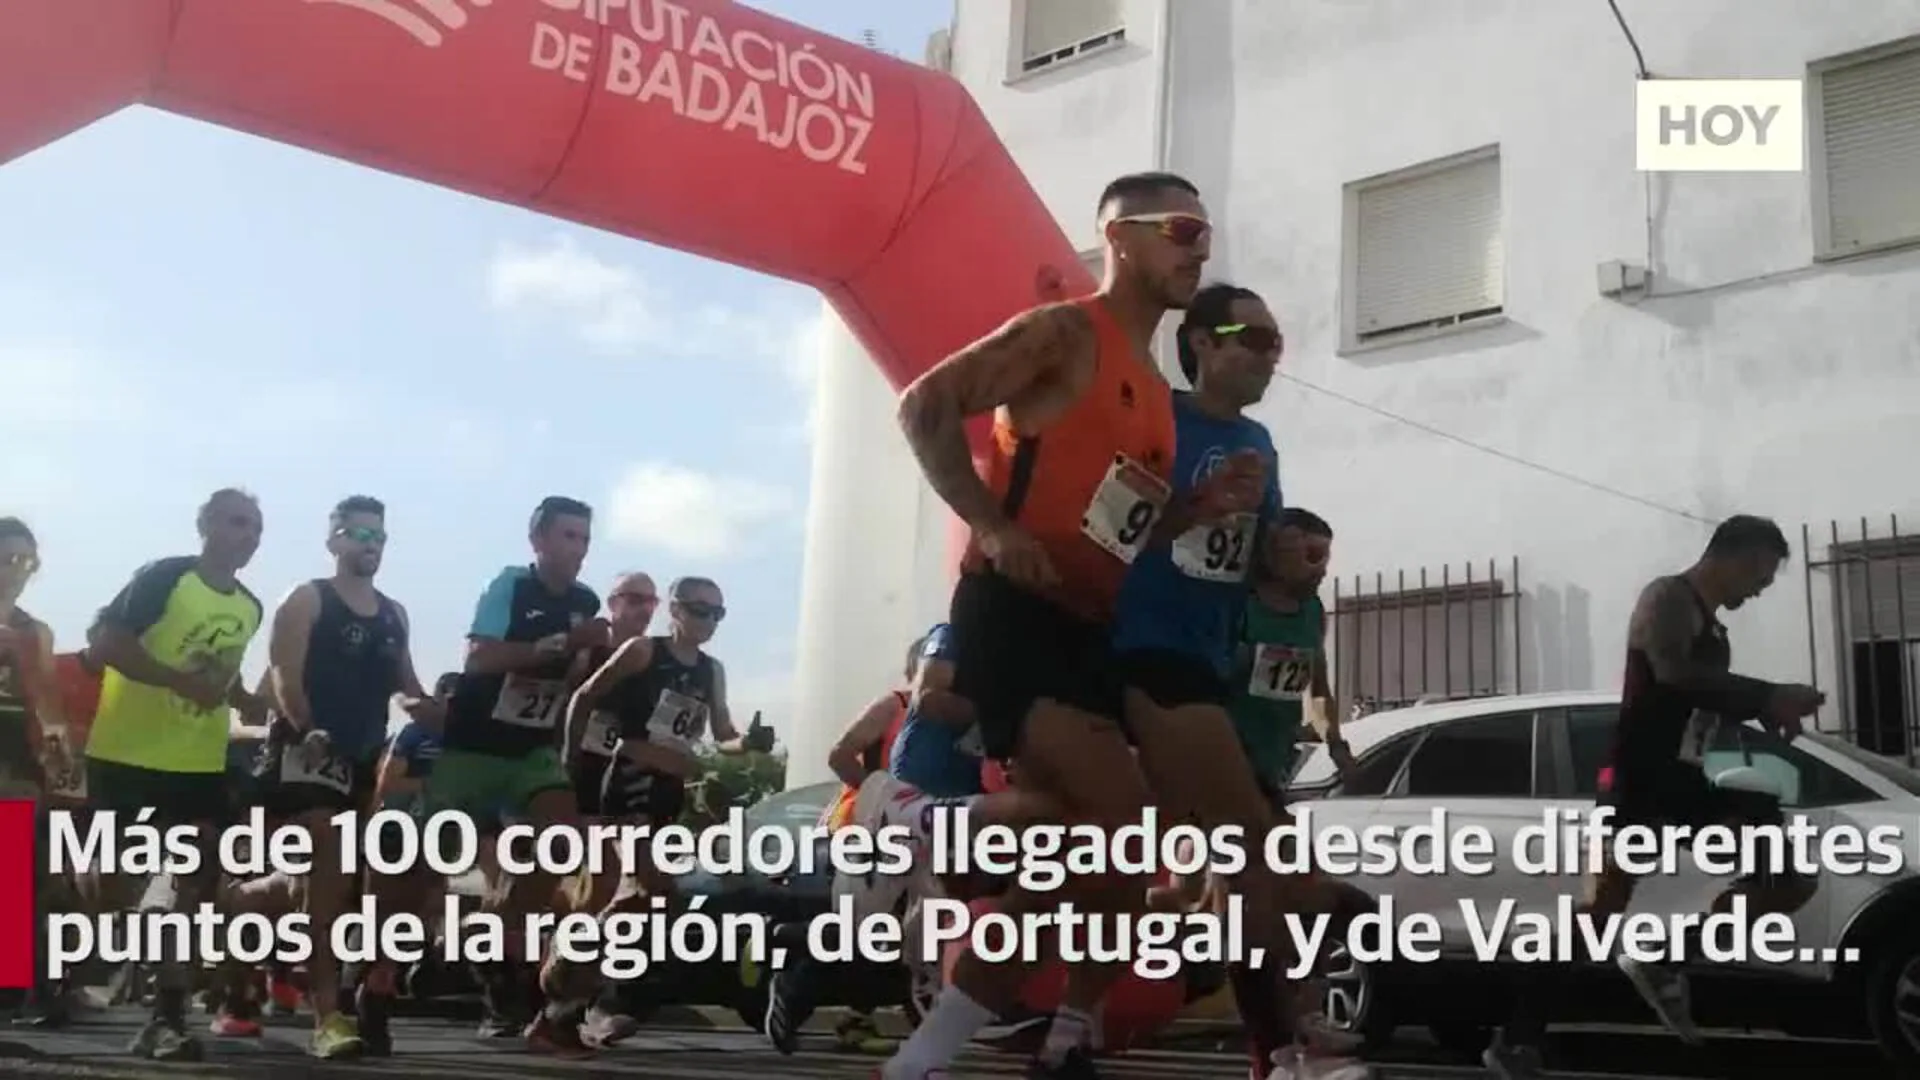 %u200BEl Cross 'Vive la Trashumancia' reúne a más de un centenar de corredores en Valverde de Leganés%u200B